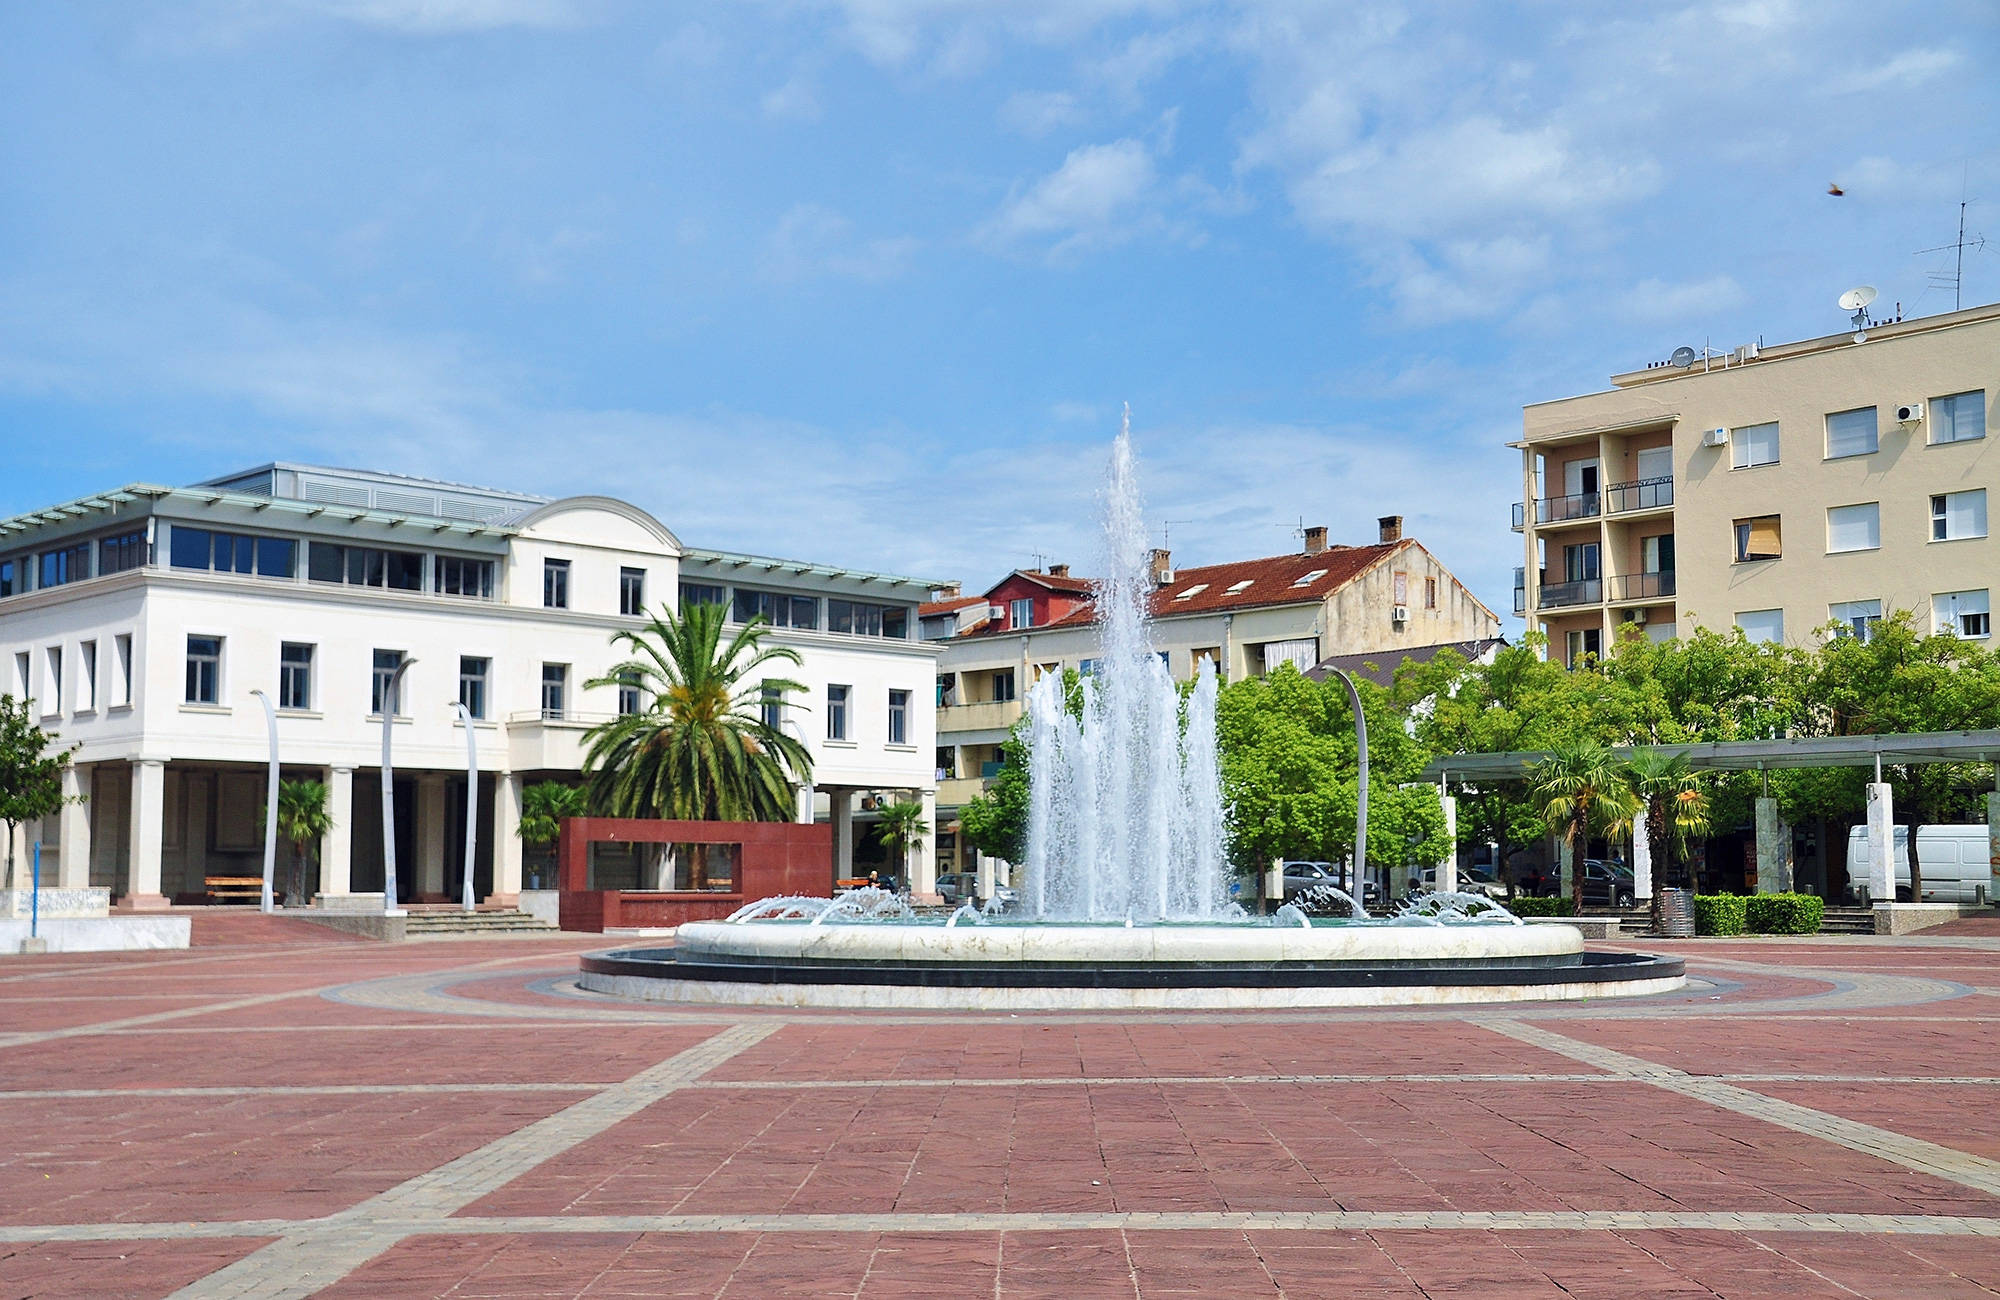 Plein van de onafhankelijkheid in Podgorica | Reizen naar Podgorica | KILROY